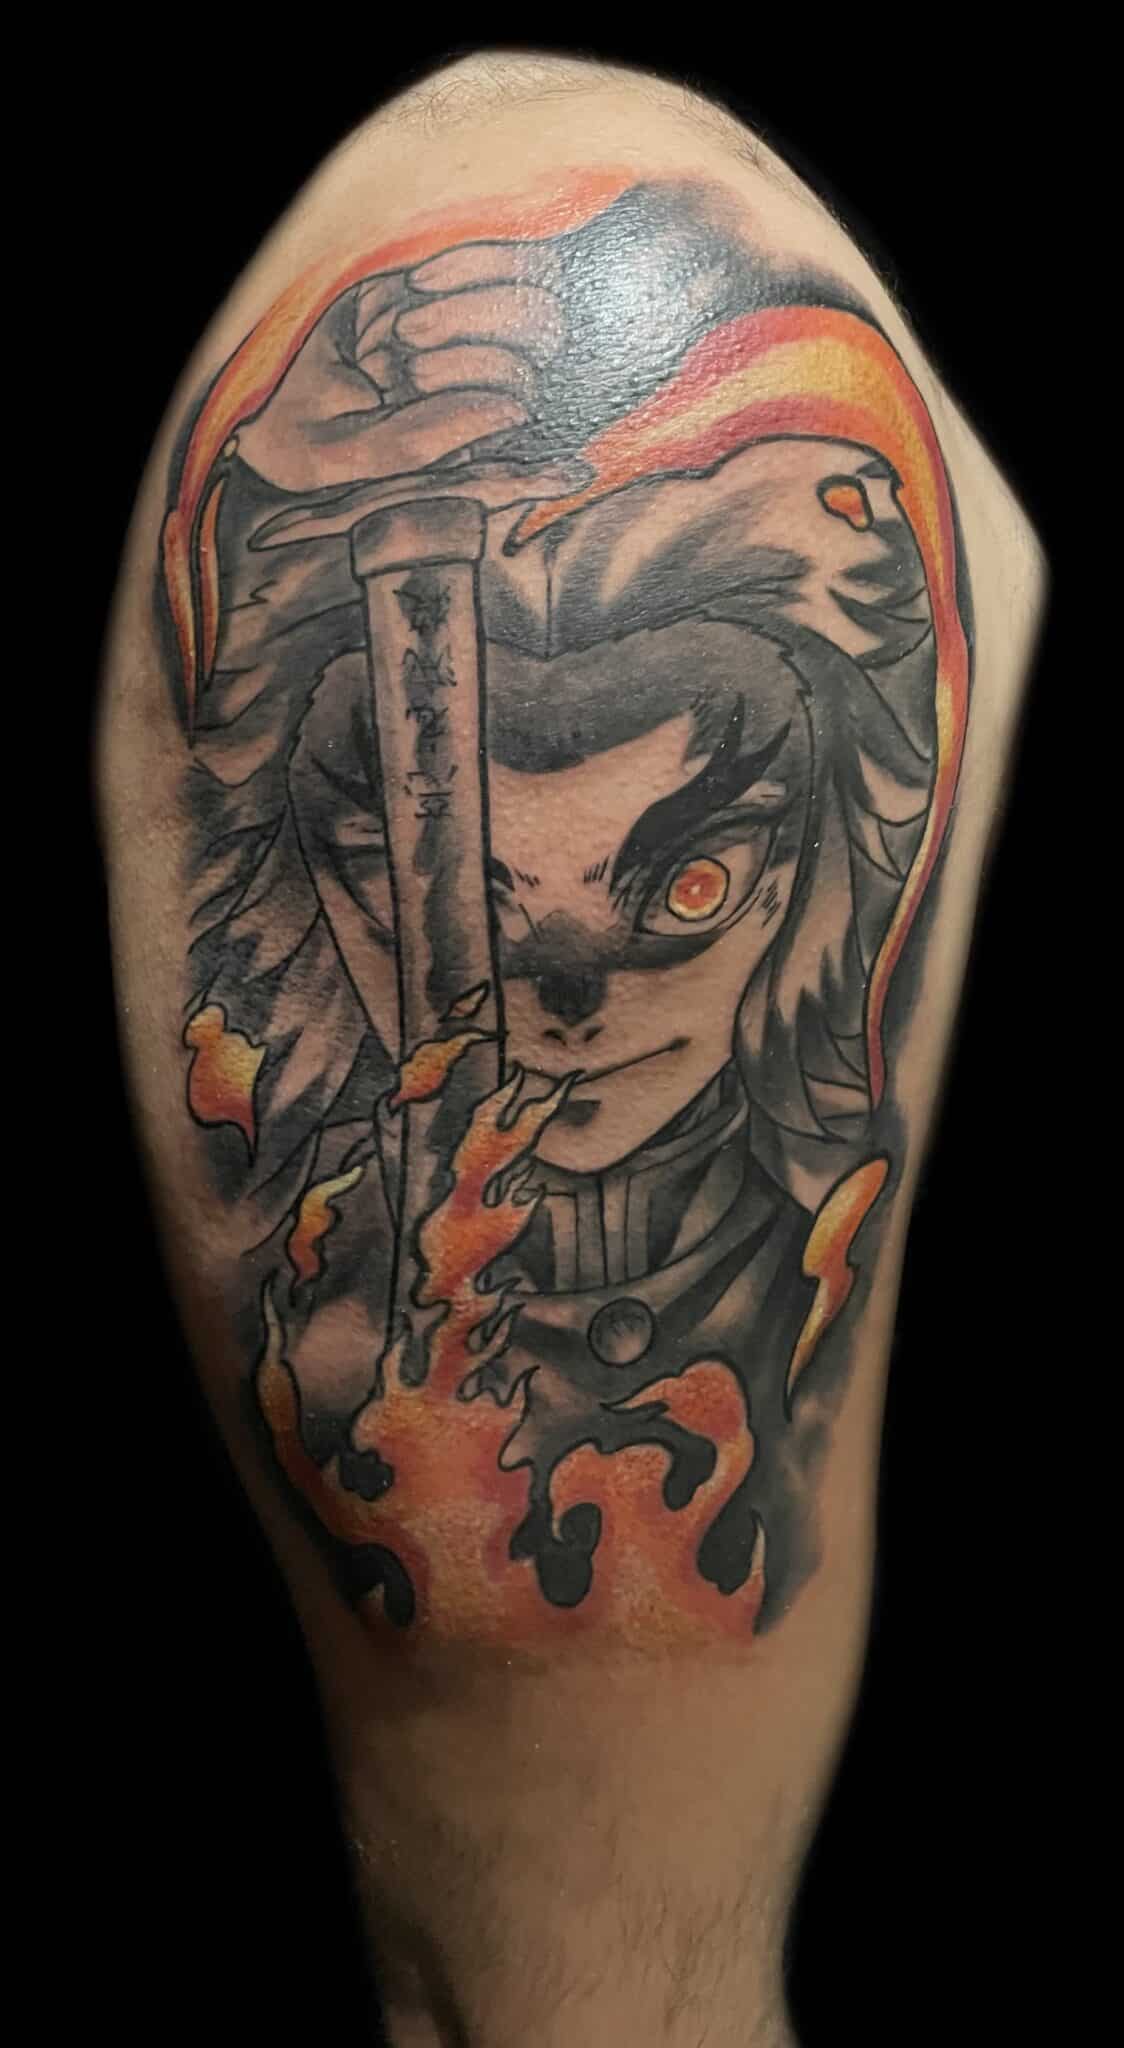 Fabian Rivera, Revolt Tattoos artist